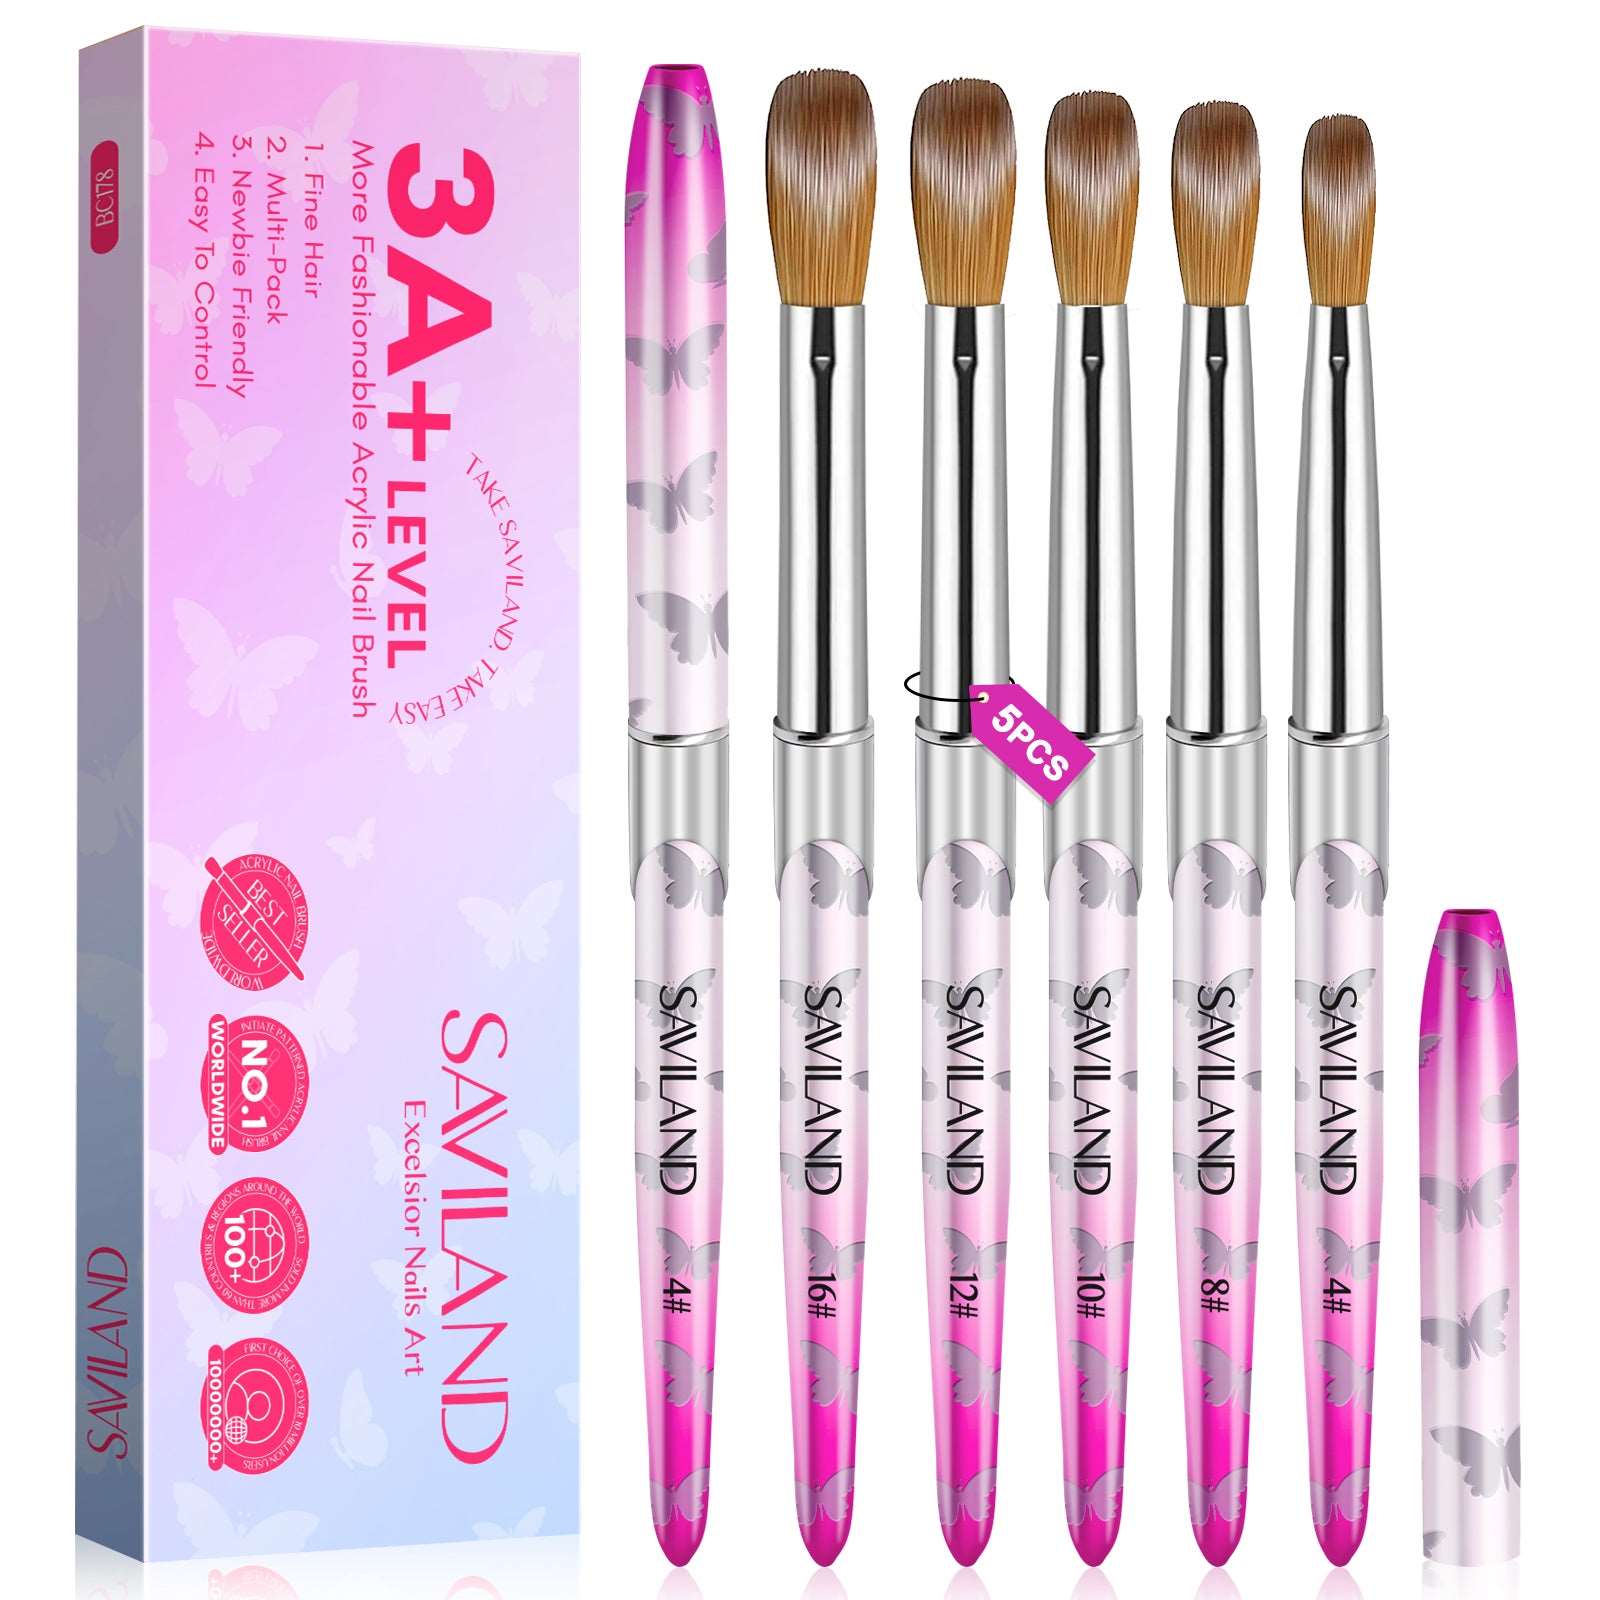 Women's Saviland 5pcs Acrylic Nail Brushset -Size 4/8/10/12/16 Kolinsky Acrylic Nail Brushes for Acrylic Application, Pink Acrylic Powder Brushes for